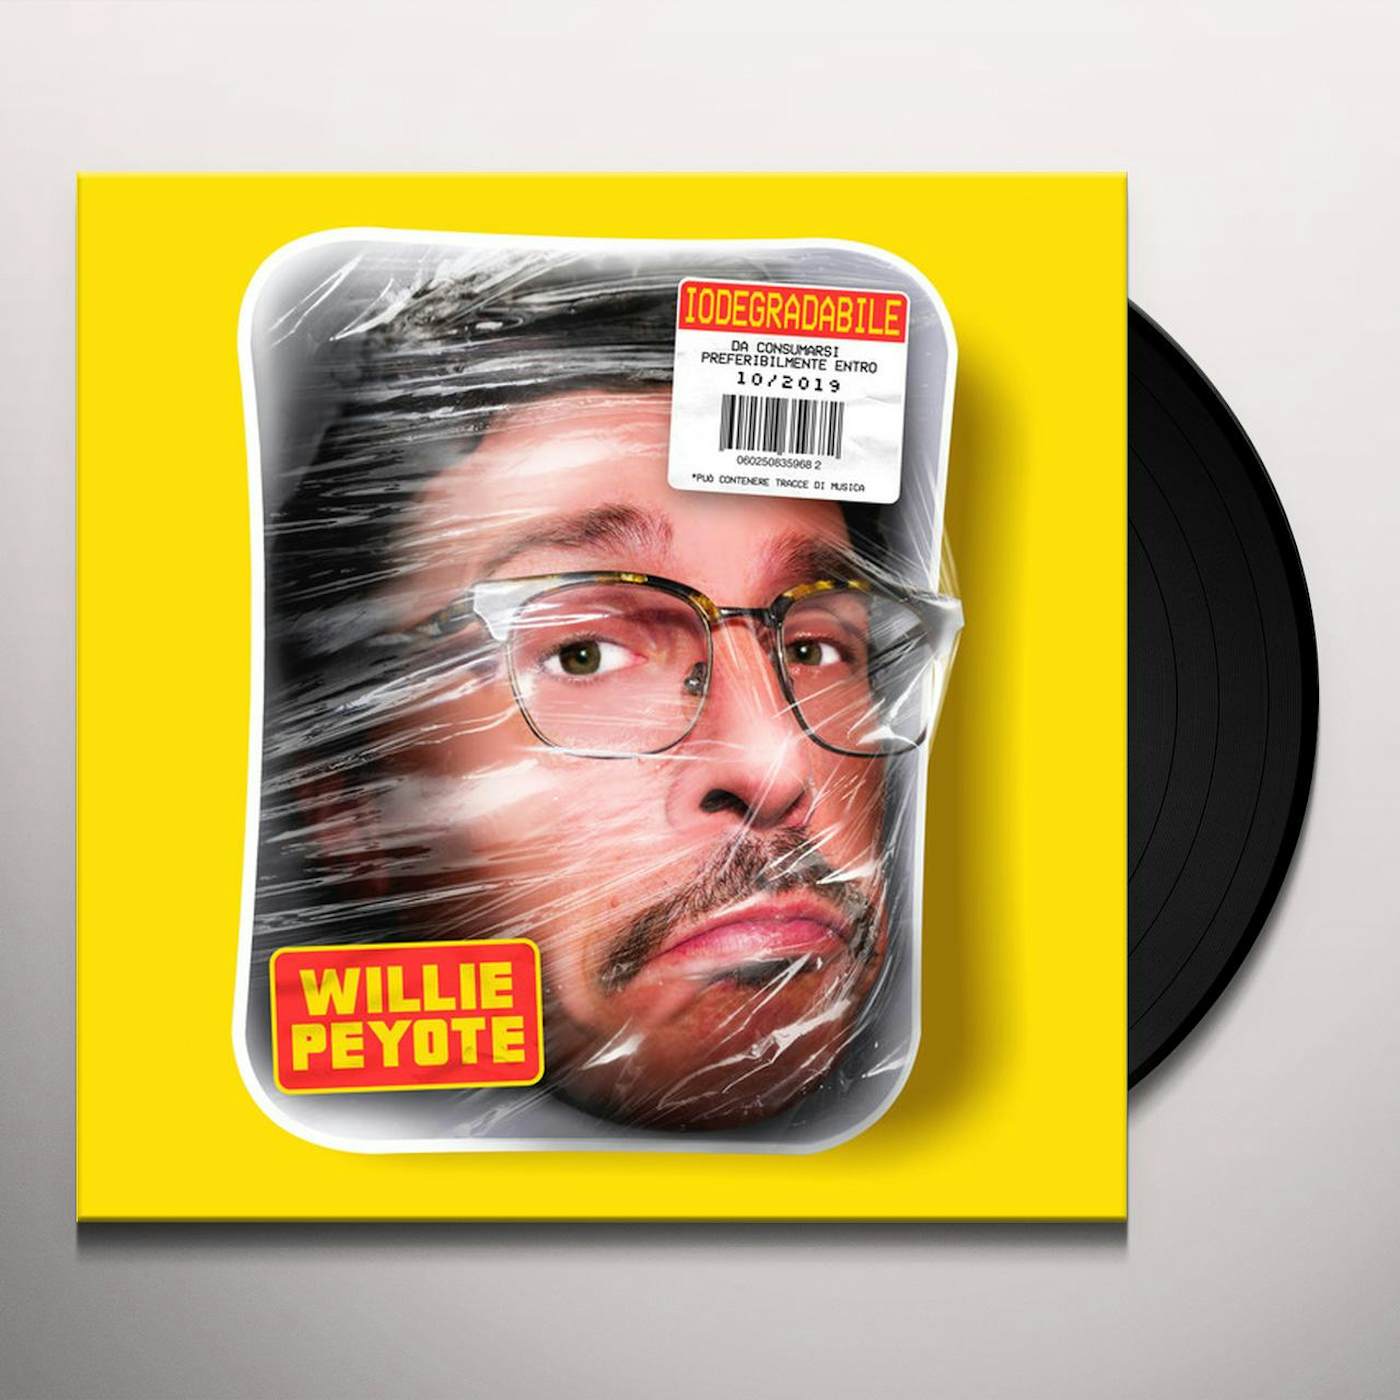 Willie Peyote Iodegradabile Vinyl Record